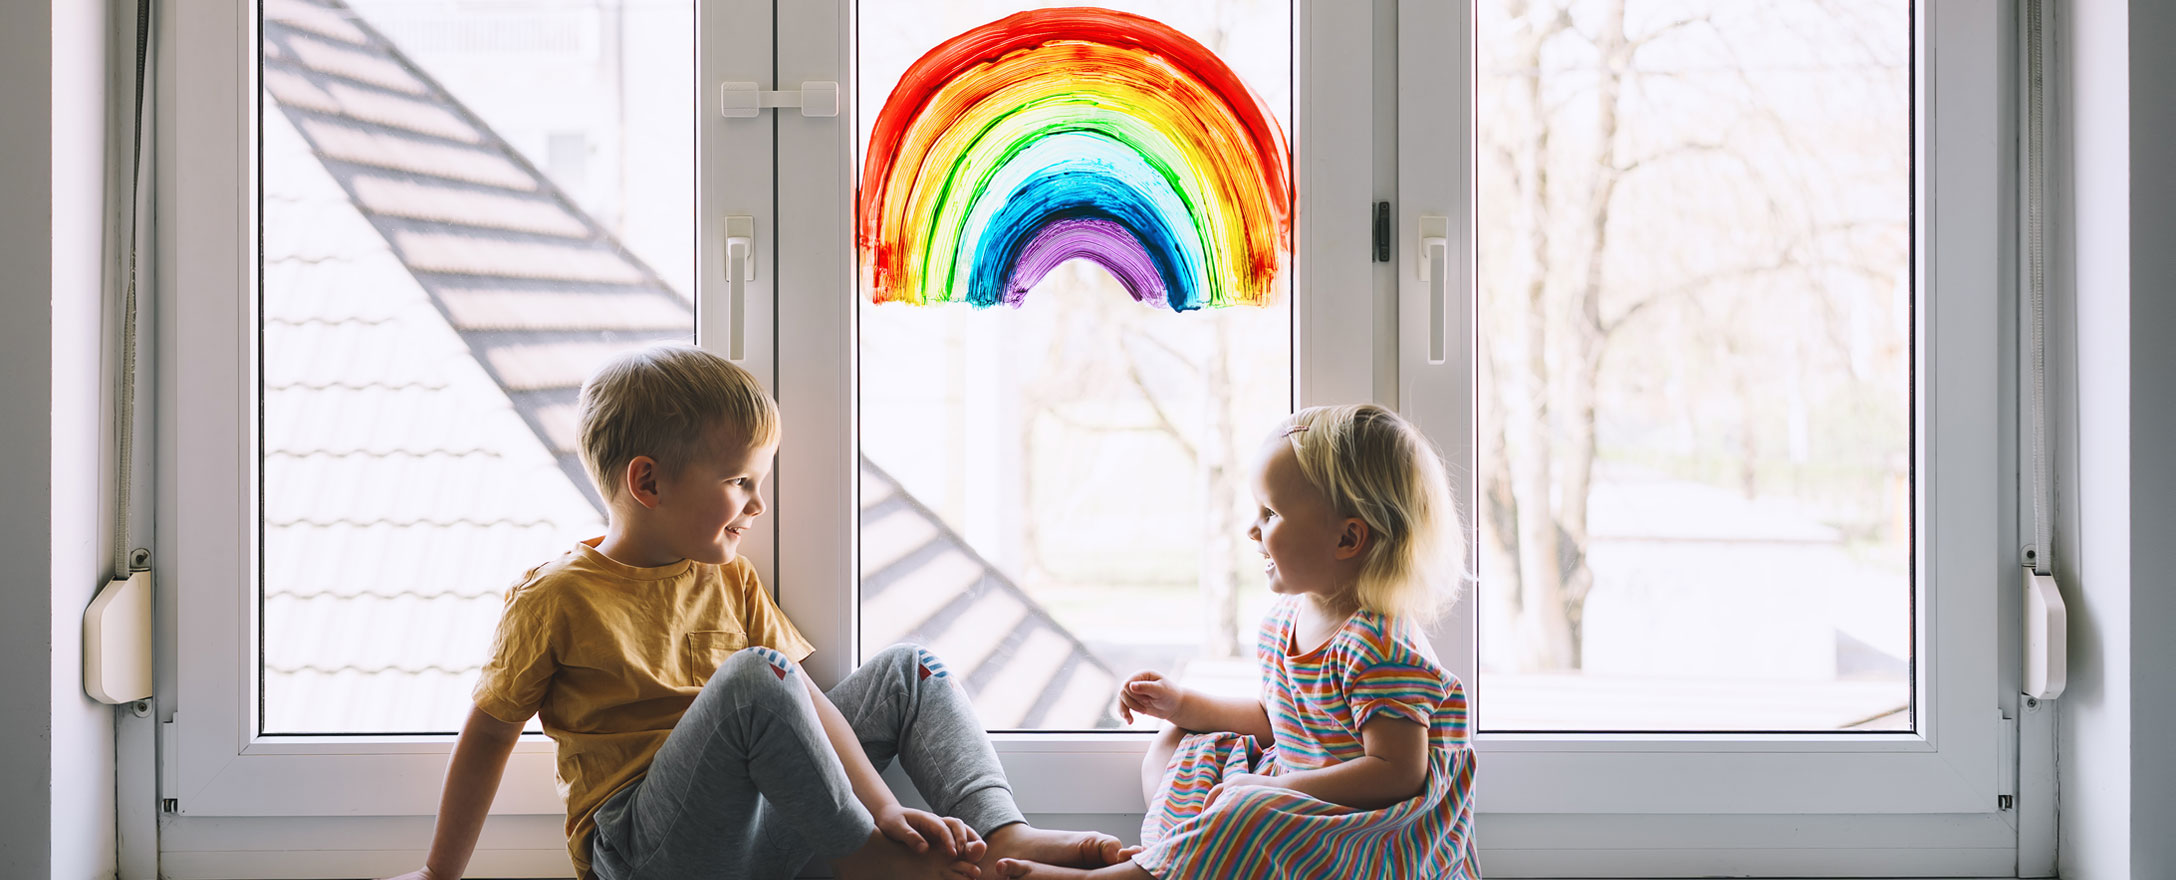 Kinder am Fenster mit Regenbogen